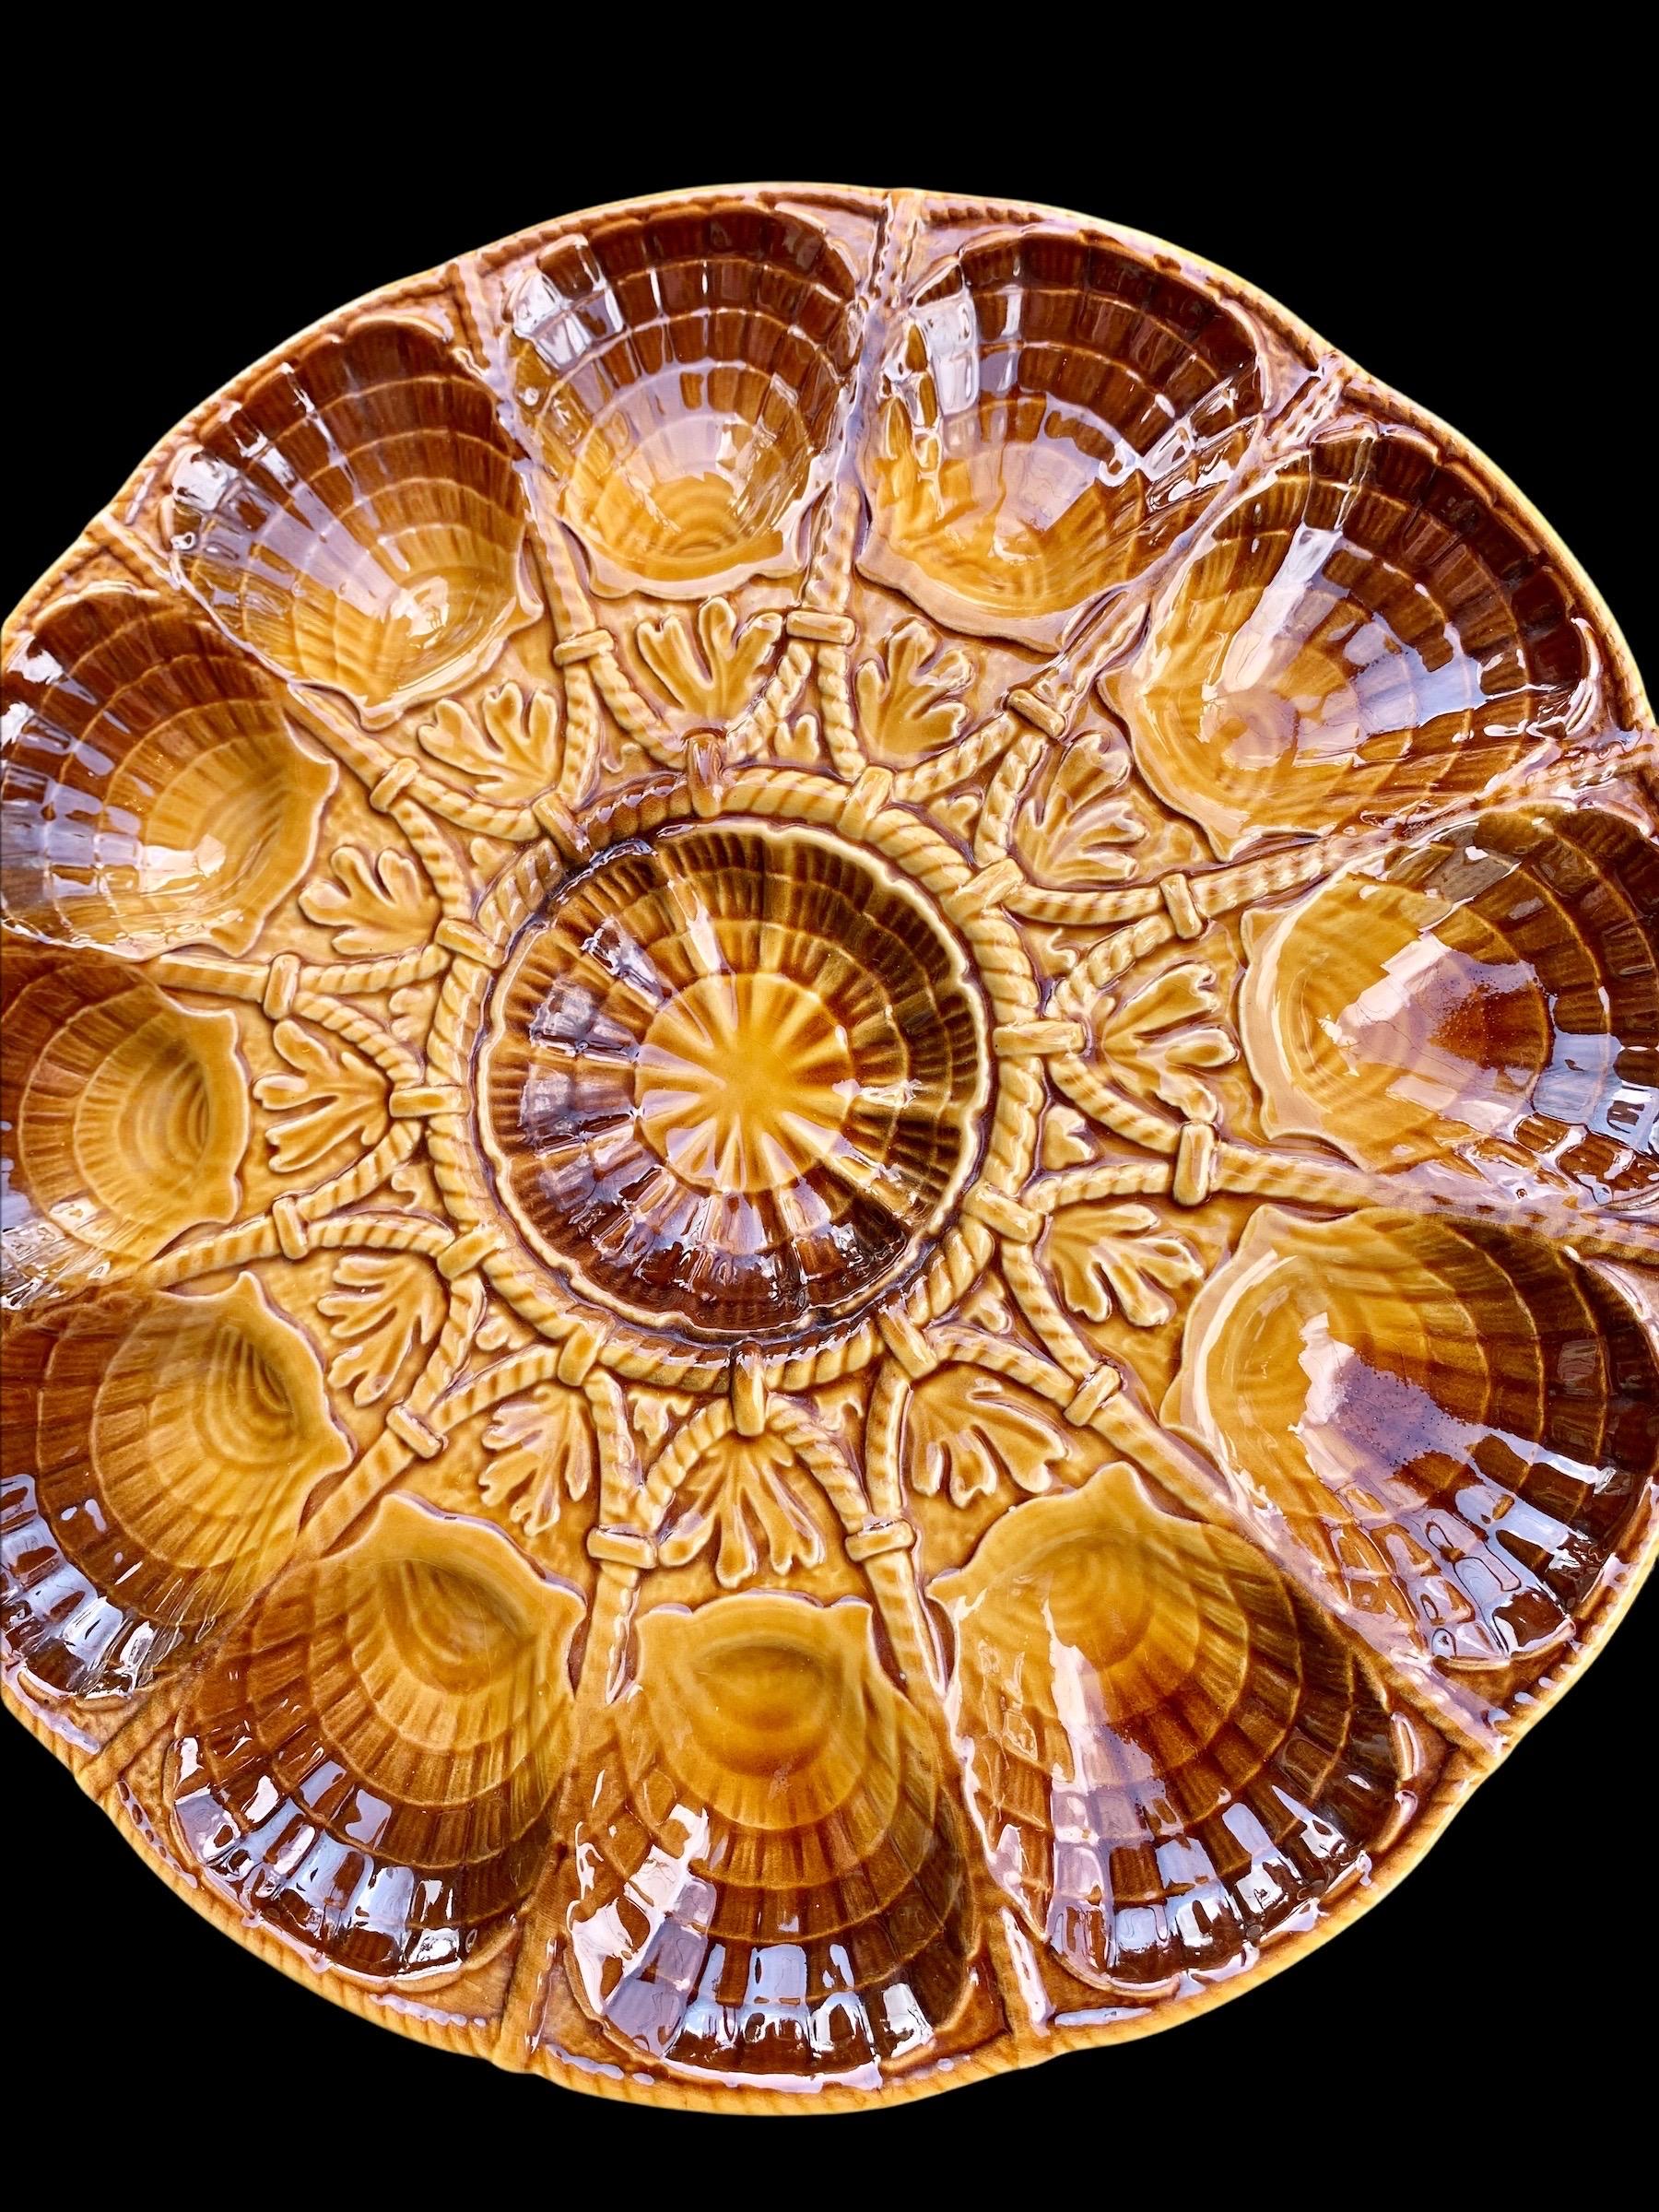 Eine antike Austernschale, handgefertigt von dem bekannten französischen Hersteller Sarreguemines. 
Wunderschön an einer Wand oder in Ihrem Lieblingsschrank in Ihrer Küche, Ihrem Esszimmer oder Ihrem Wohnzimmer.

Die Töpferei von Sarreguemines wurde